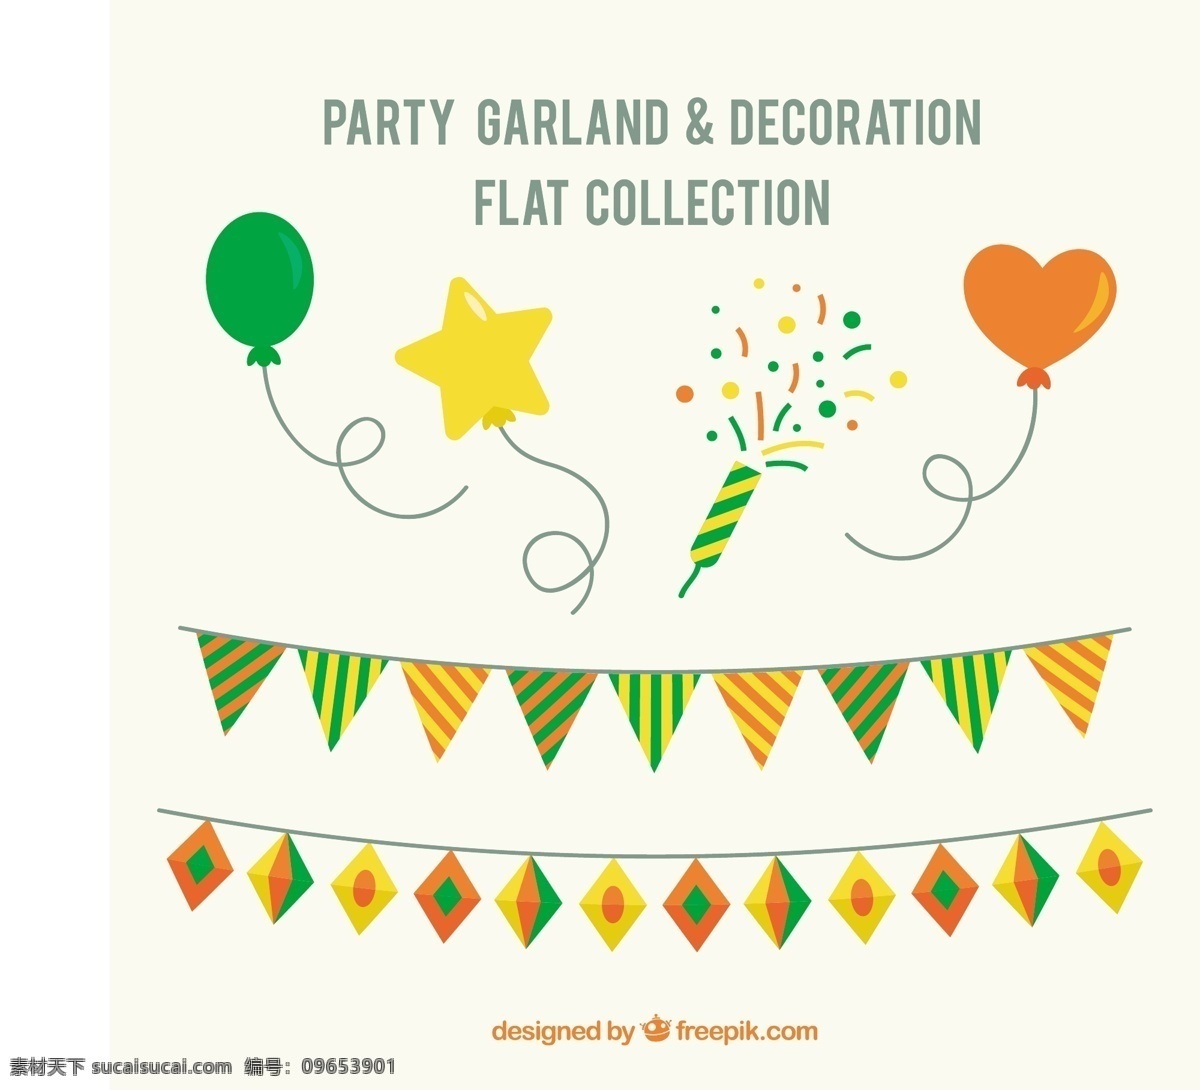 生日装饰元素 生日 聚会 快乐 装饰 周年纪念 庆典 彩纸 气球 彩旗 庆祝